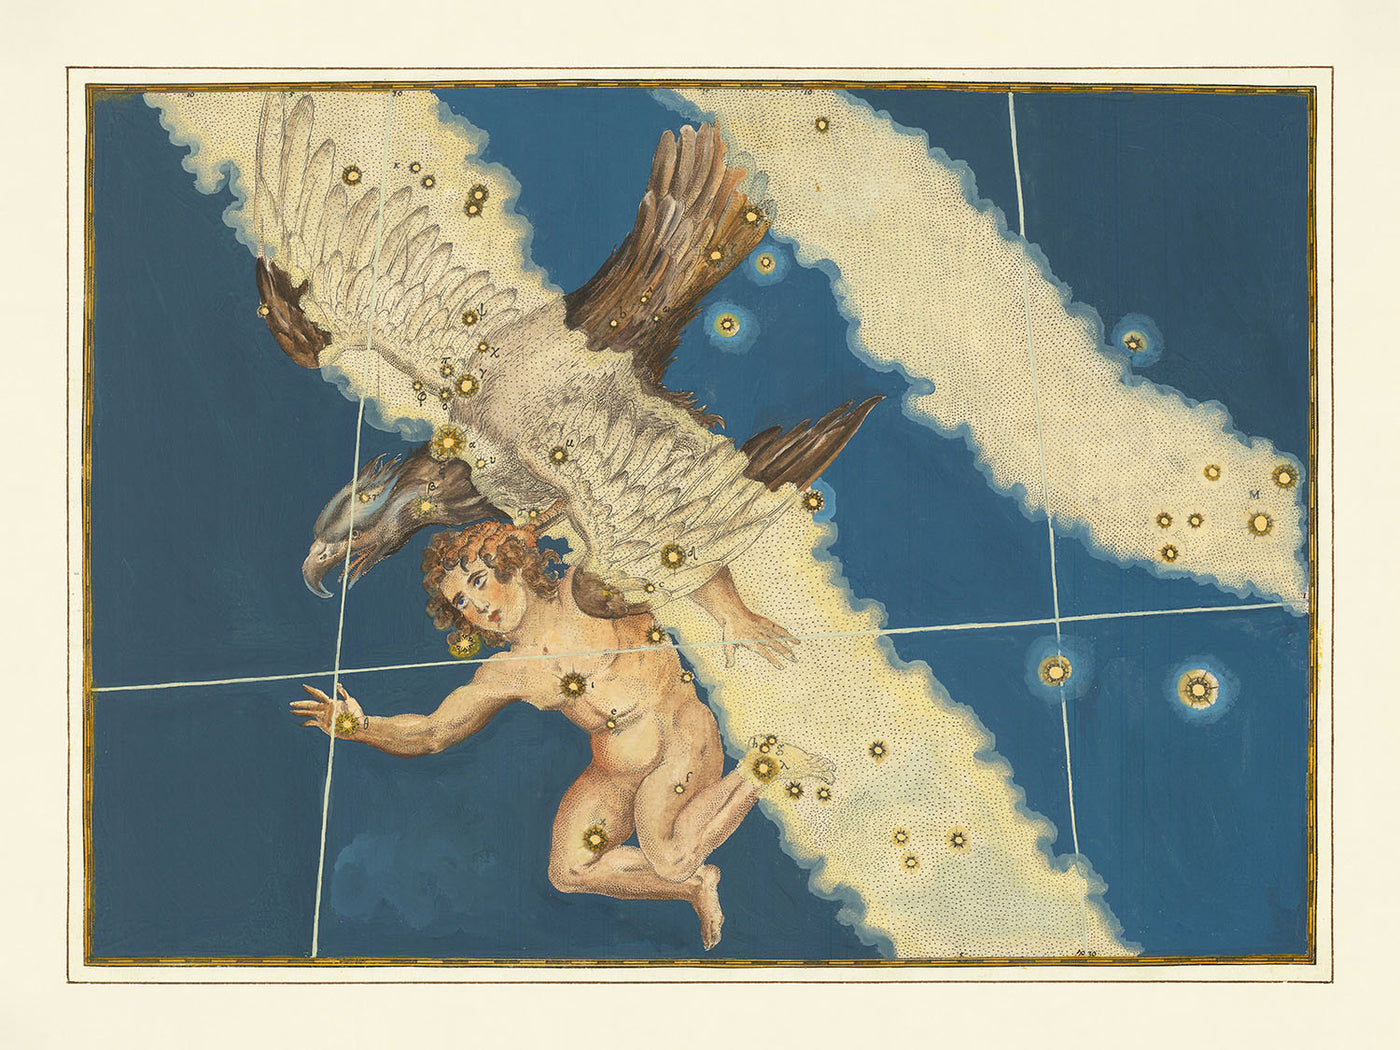 Alte Sternkarte des Adlers von Johann Bayer, 1603